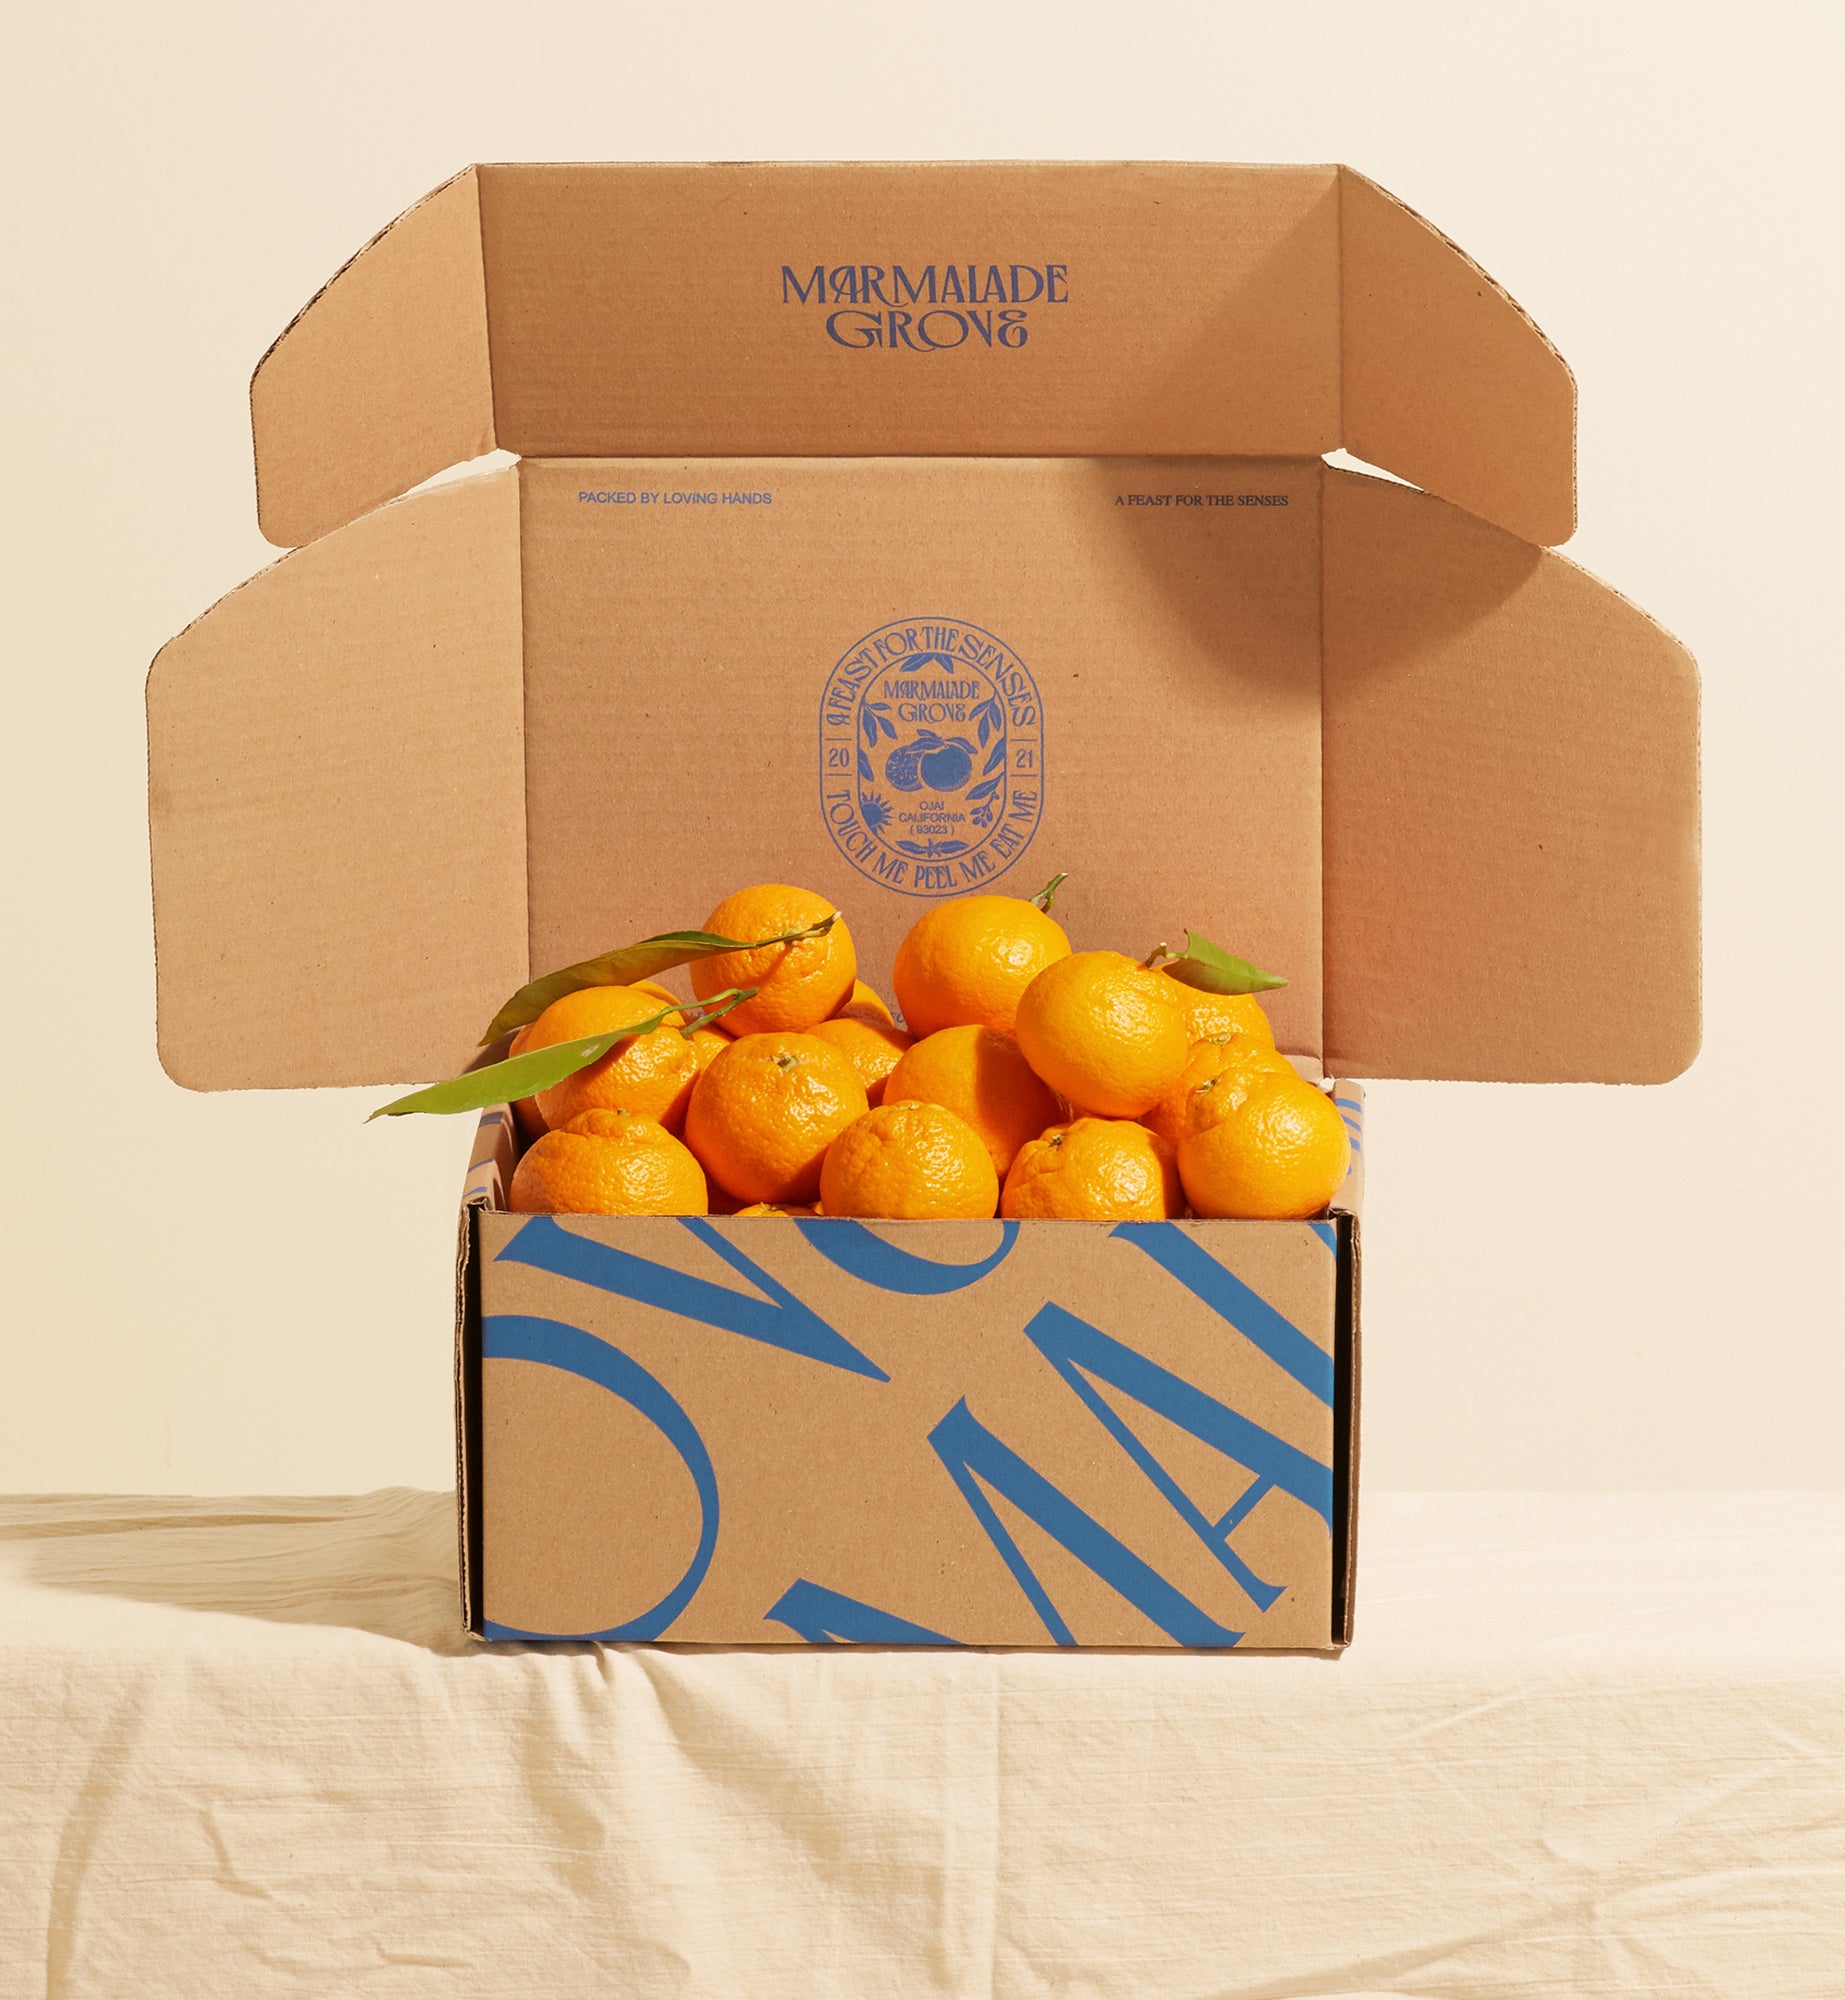 Satsuma Mandarins – Marmalade Grove